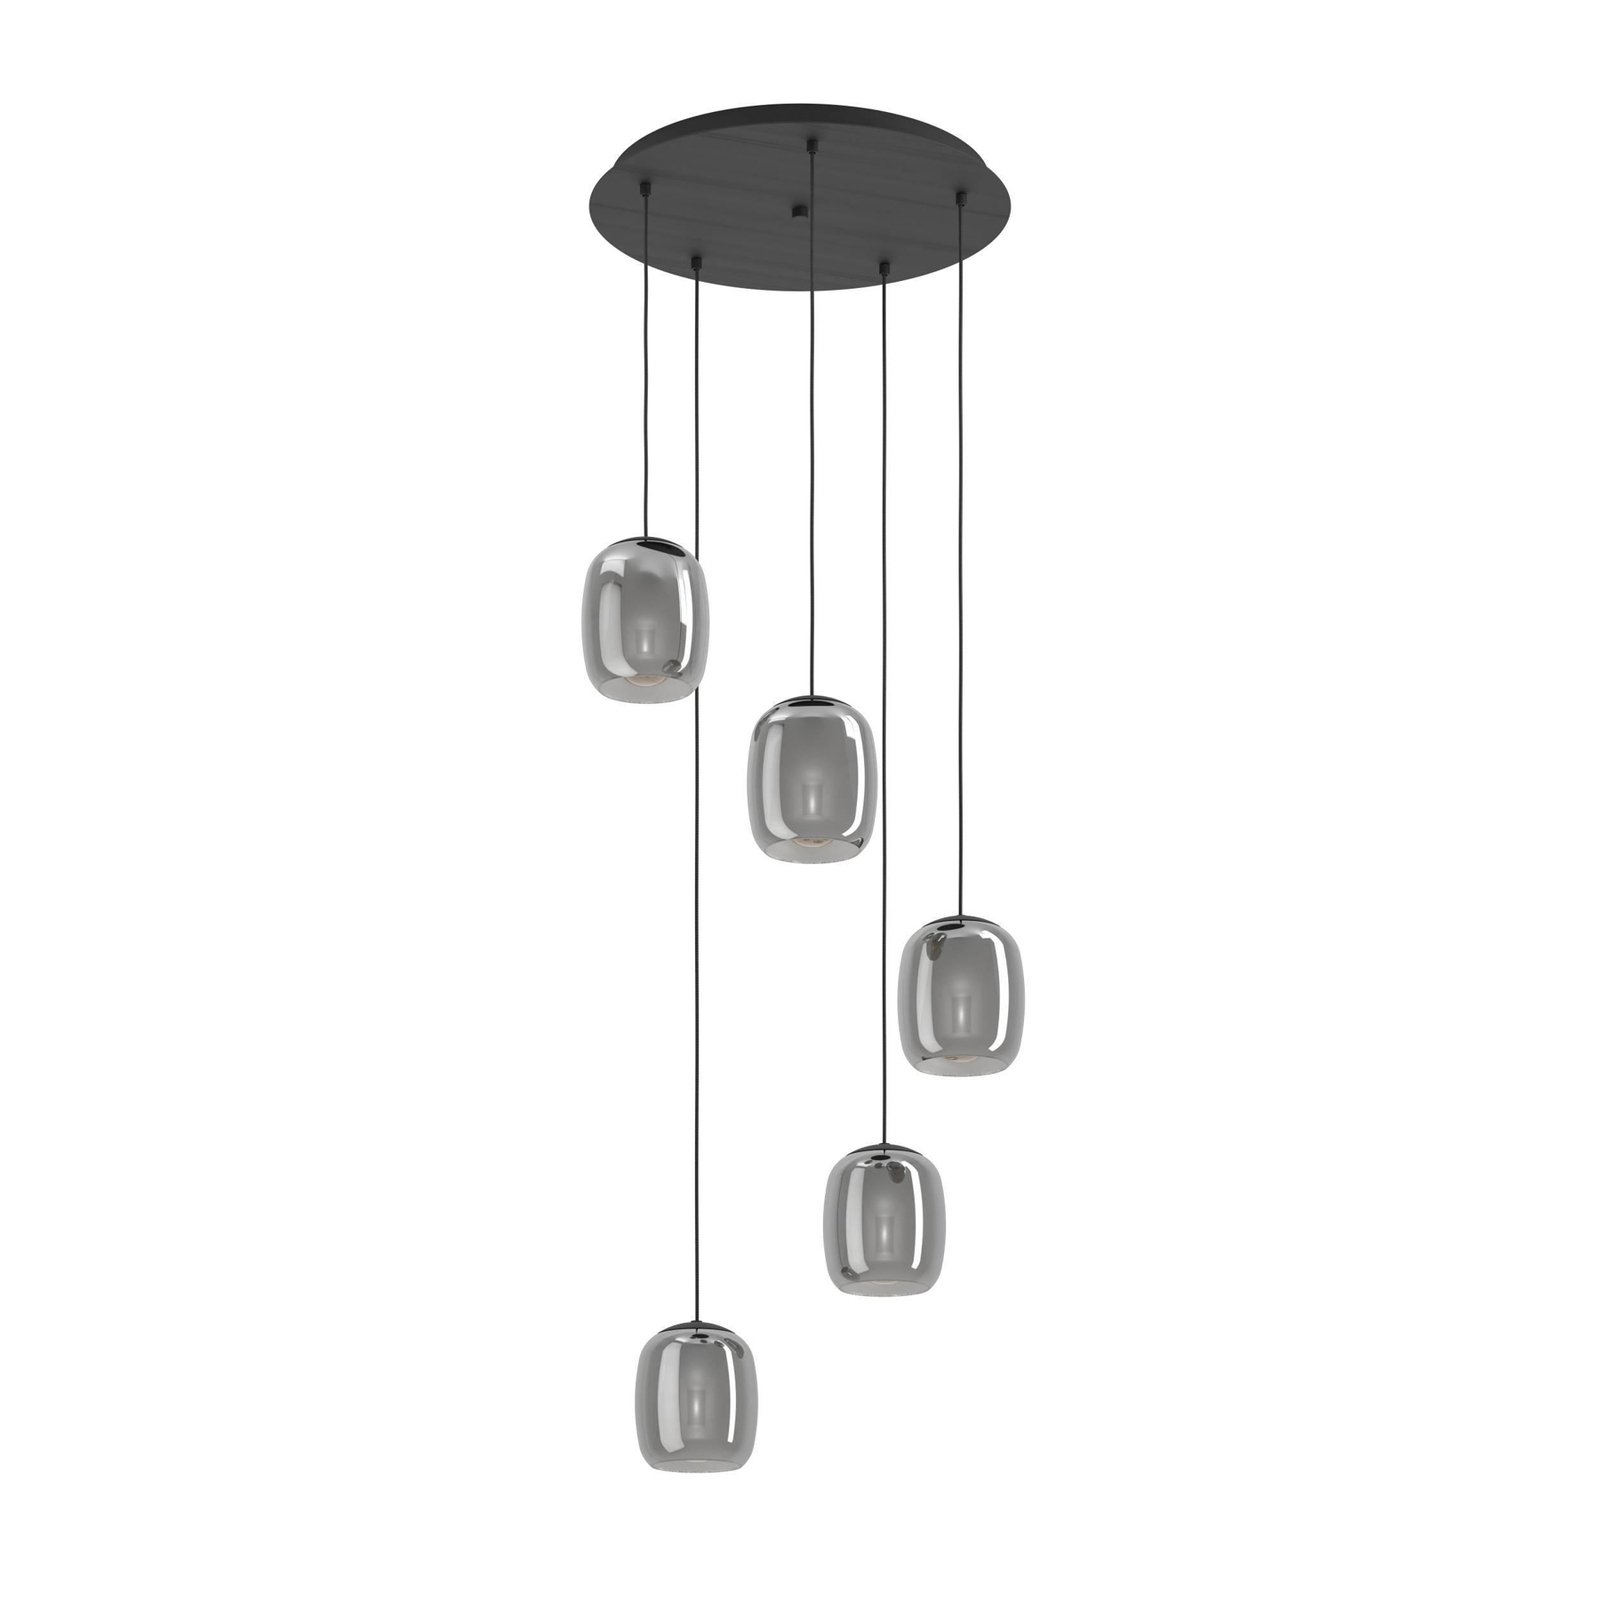 Ciampino pendant light, black, 5-bulb.